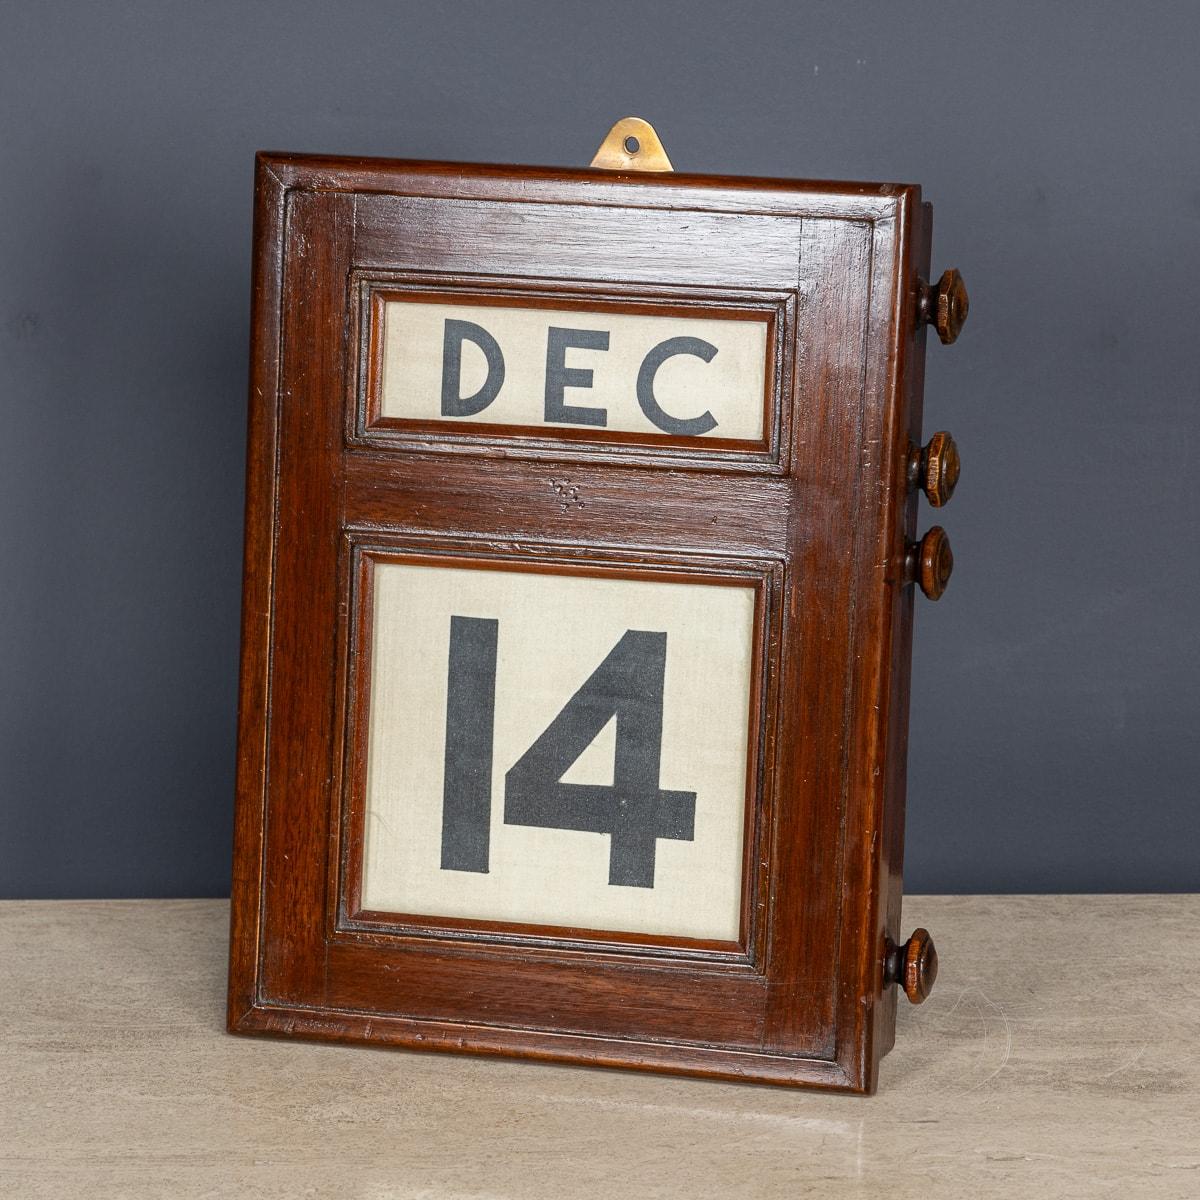 Ein hervorragender Tischkalender des 20. Jahrhunderts aus Mahagoniholz, der immerwährend ist. Auf einer Seite befinden sich vier Knöpfe, mit denen man hinter drei verglasten Blenden den Tag und das Datum vor- und zurückspulen kann. Auf der Rückseite